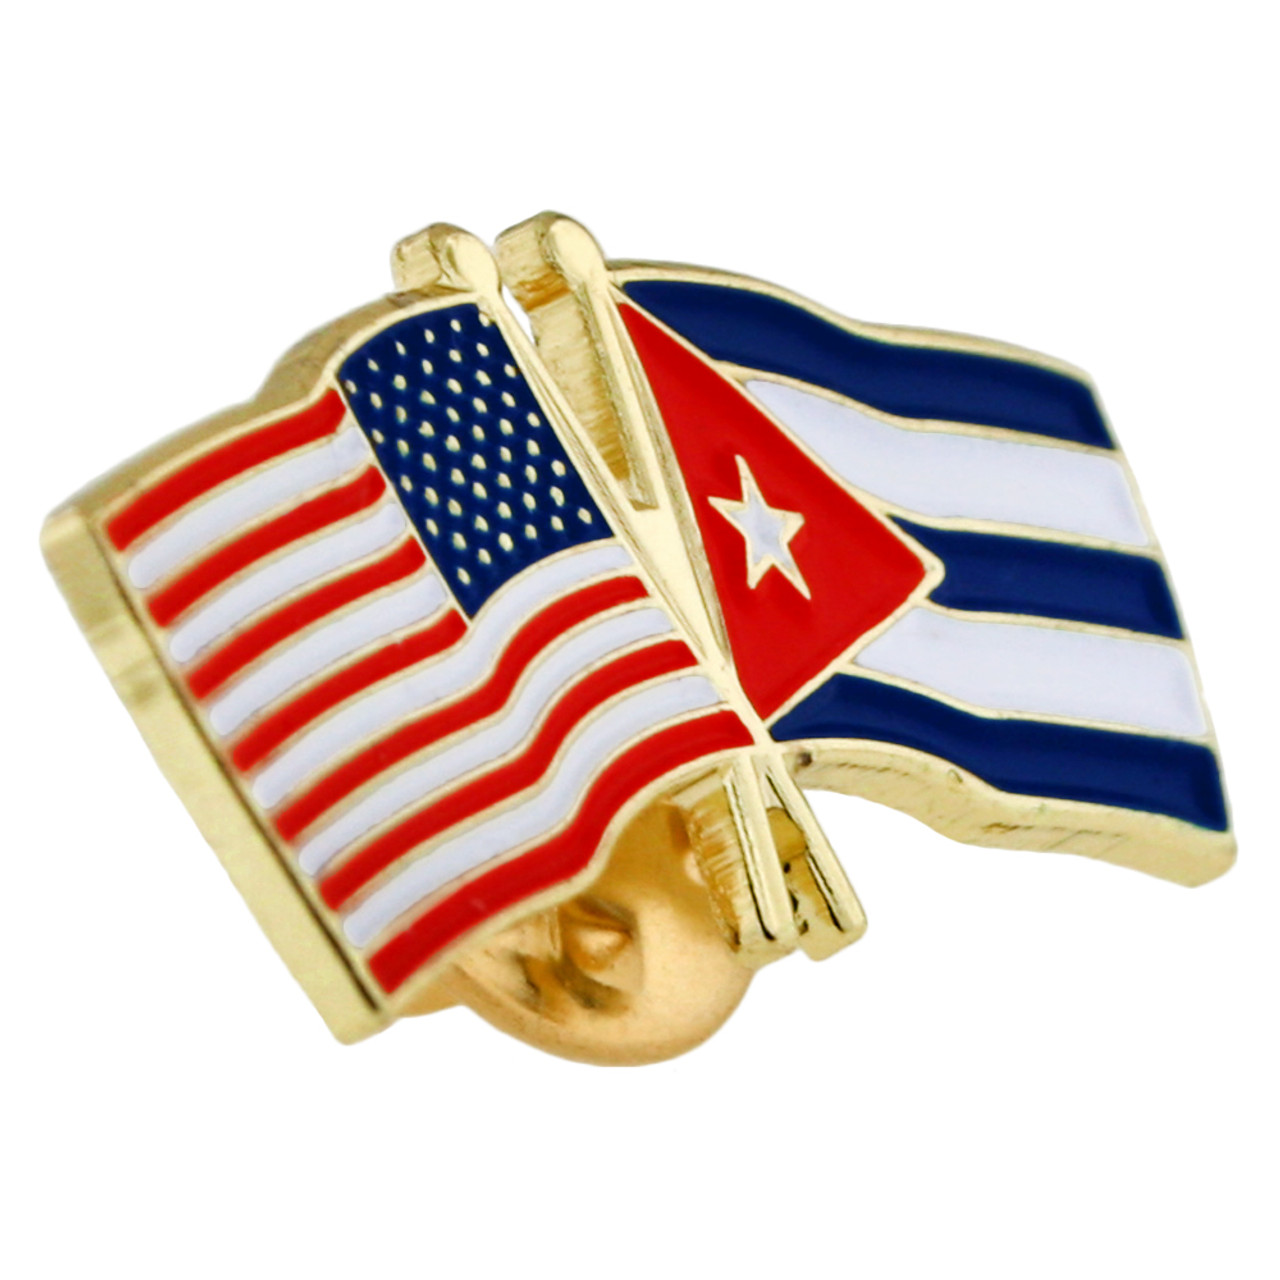 American & Cuba Flags Pin 1" 